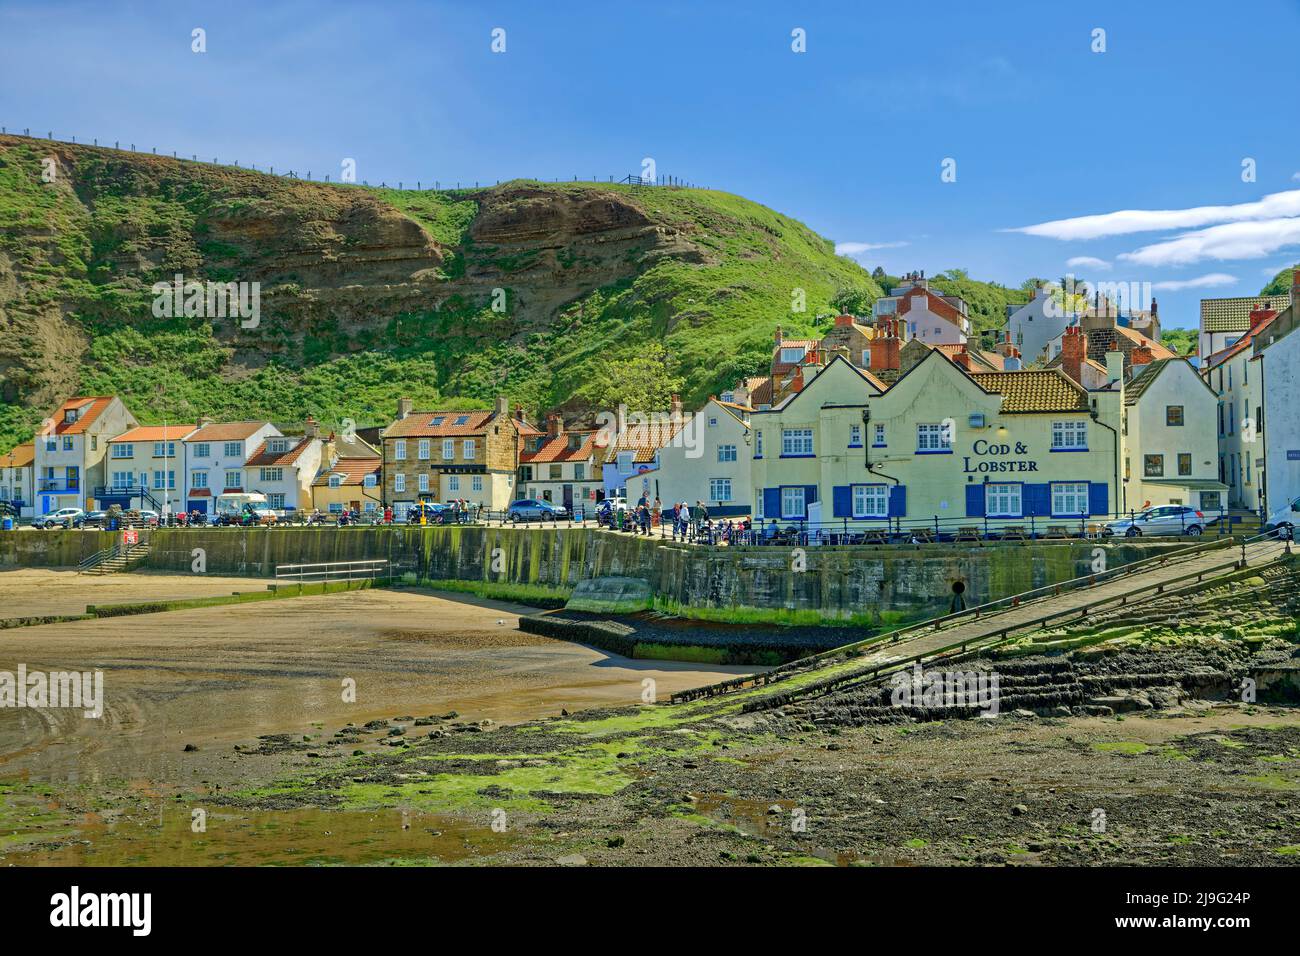 Porto e villaggio con il 'Cod & Lobster' Inn a Staithes, North Yorkshire, Inghilterra. Foto Stock